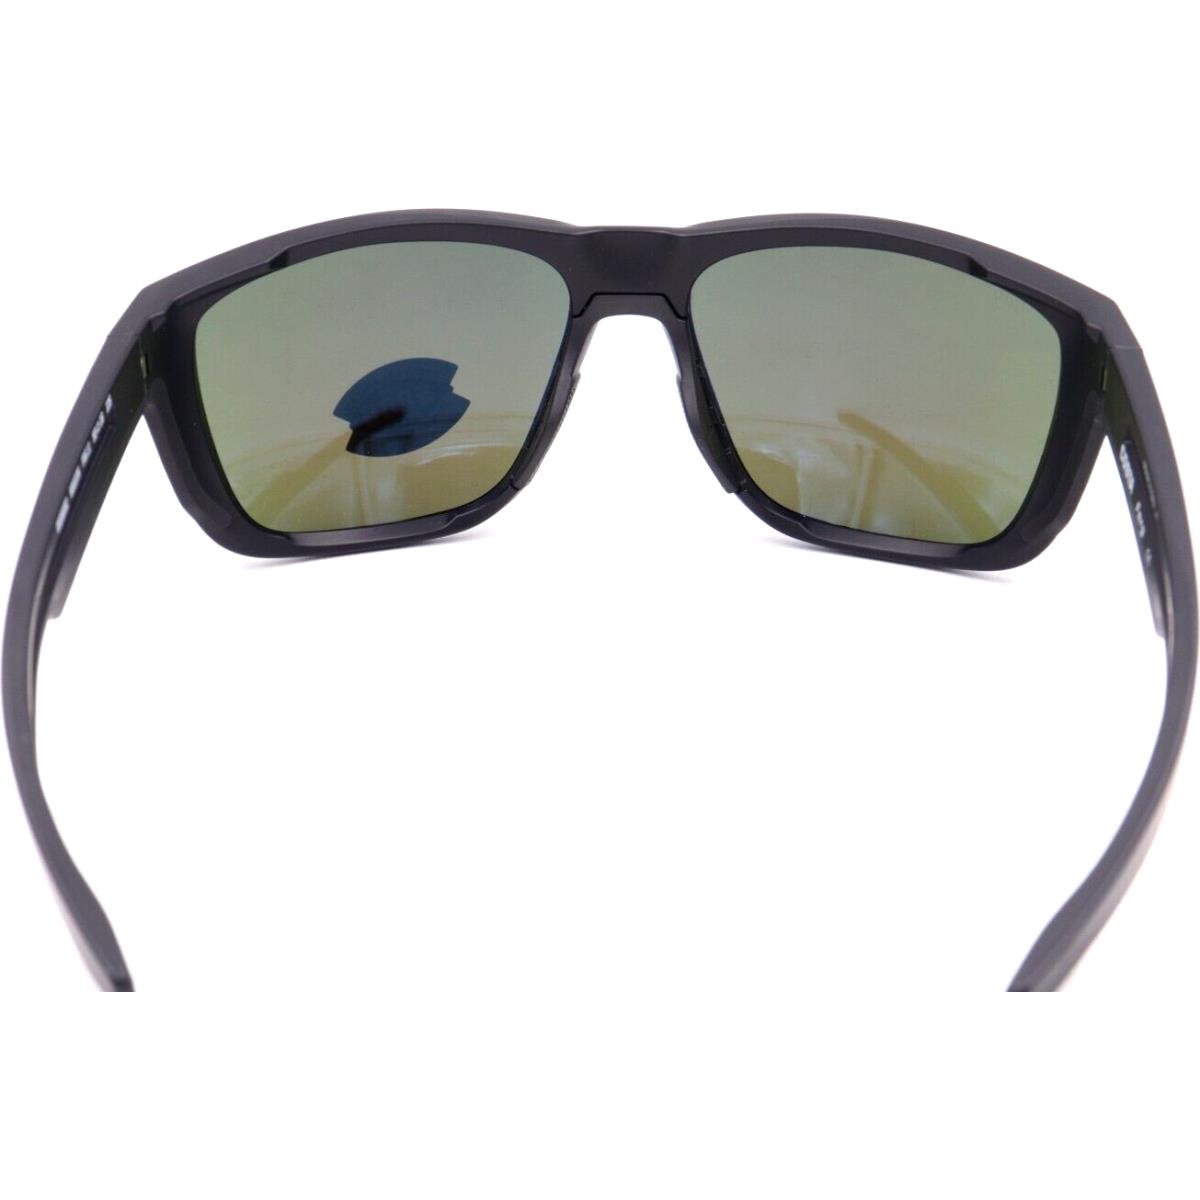 Costa Del Mar sunglasses FERG - 11 matte black Frame, Blue Lens 1